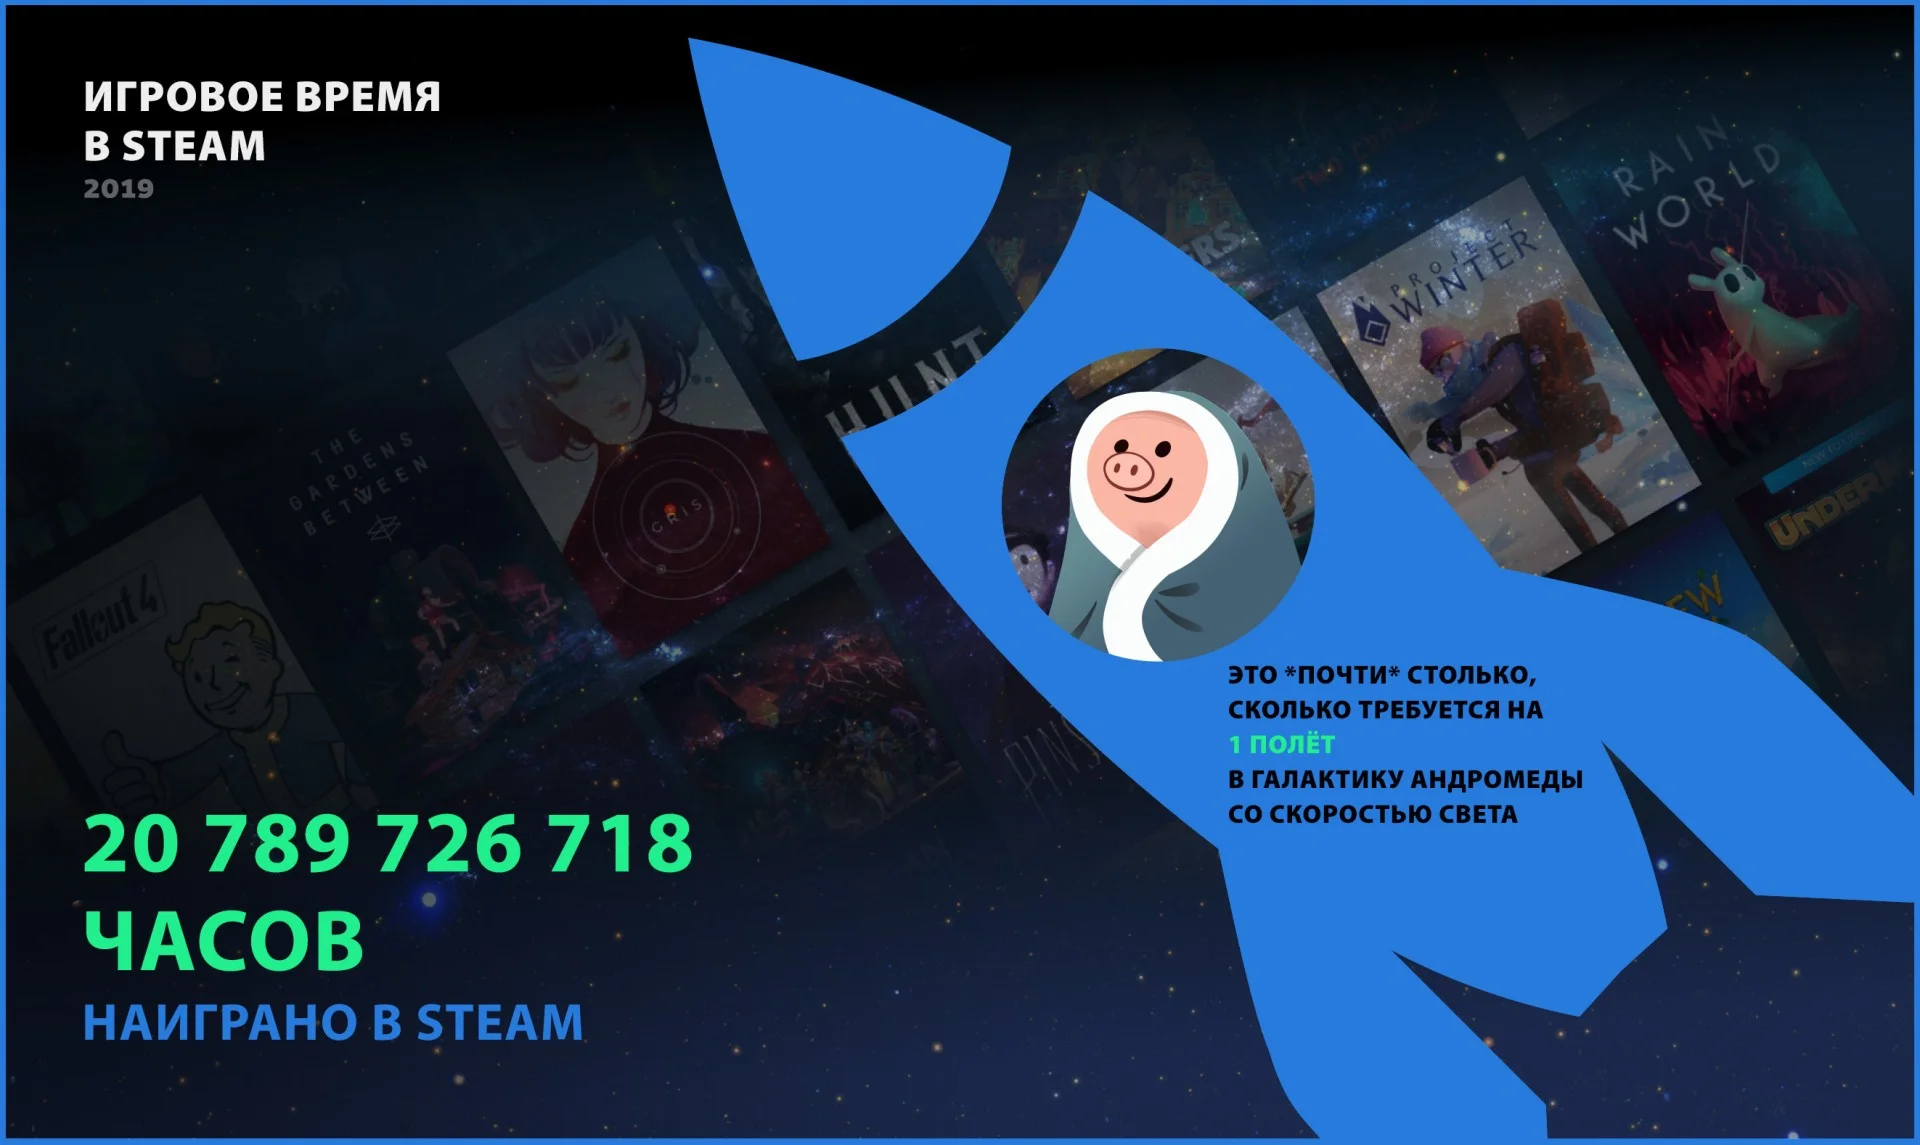 Итоги 2019 года в Steam: 95 млн активных пользователей в месяц - фото 1